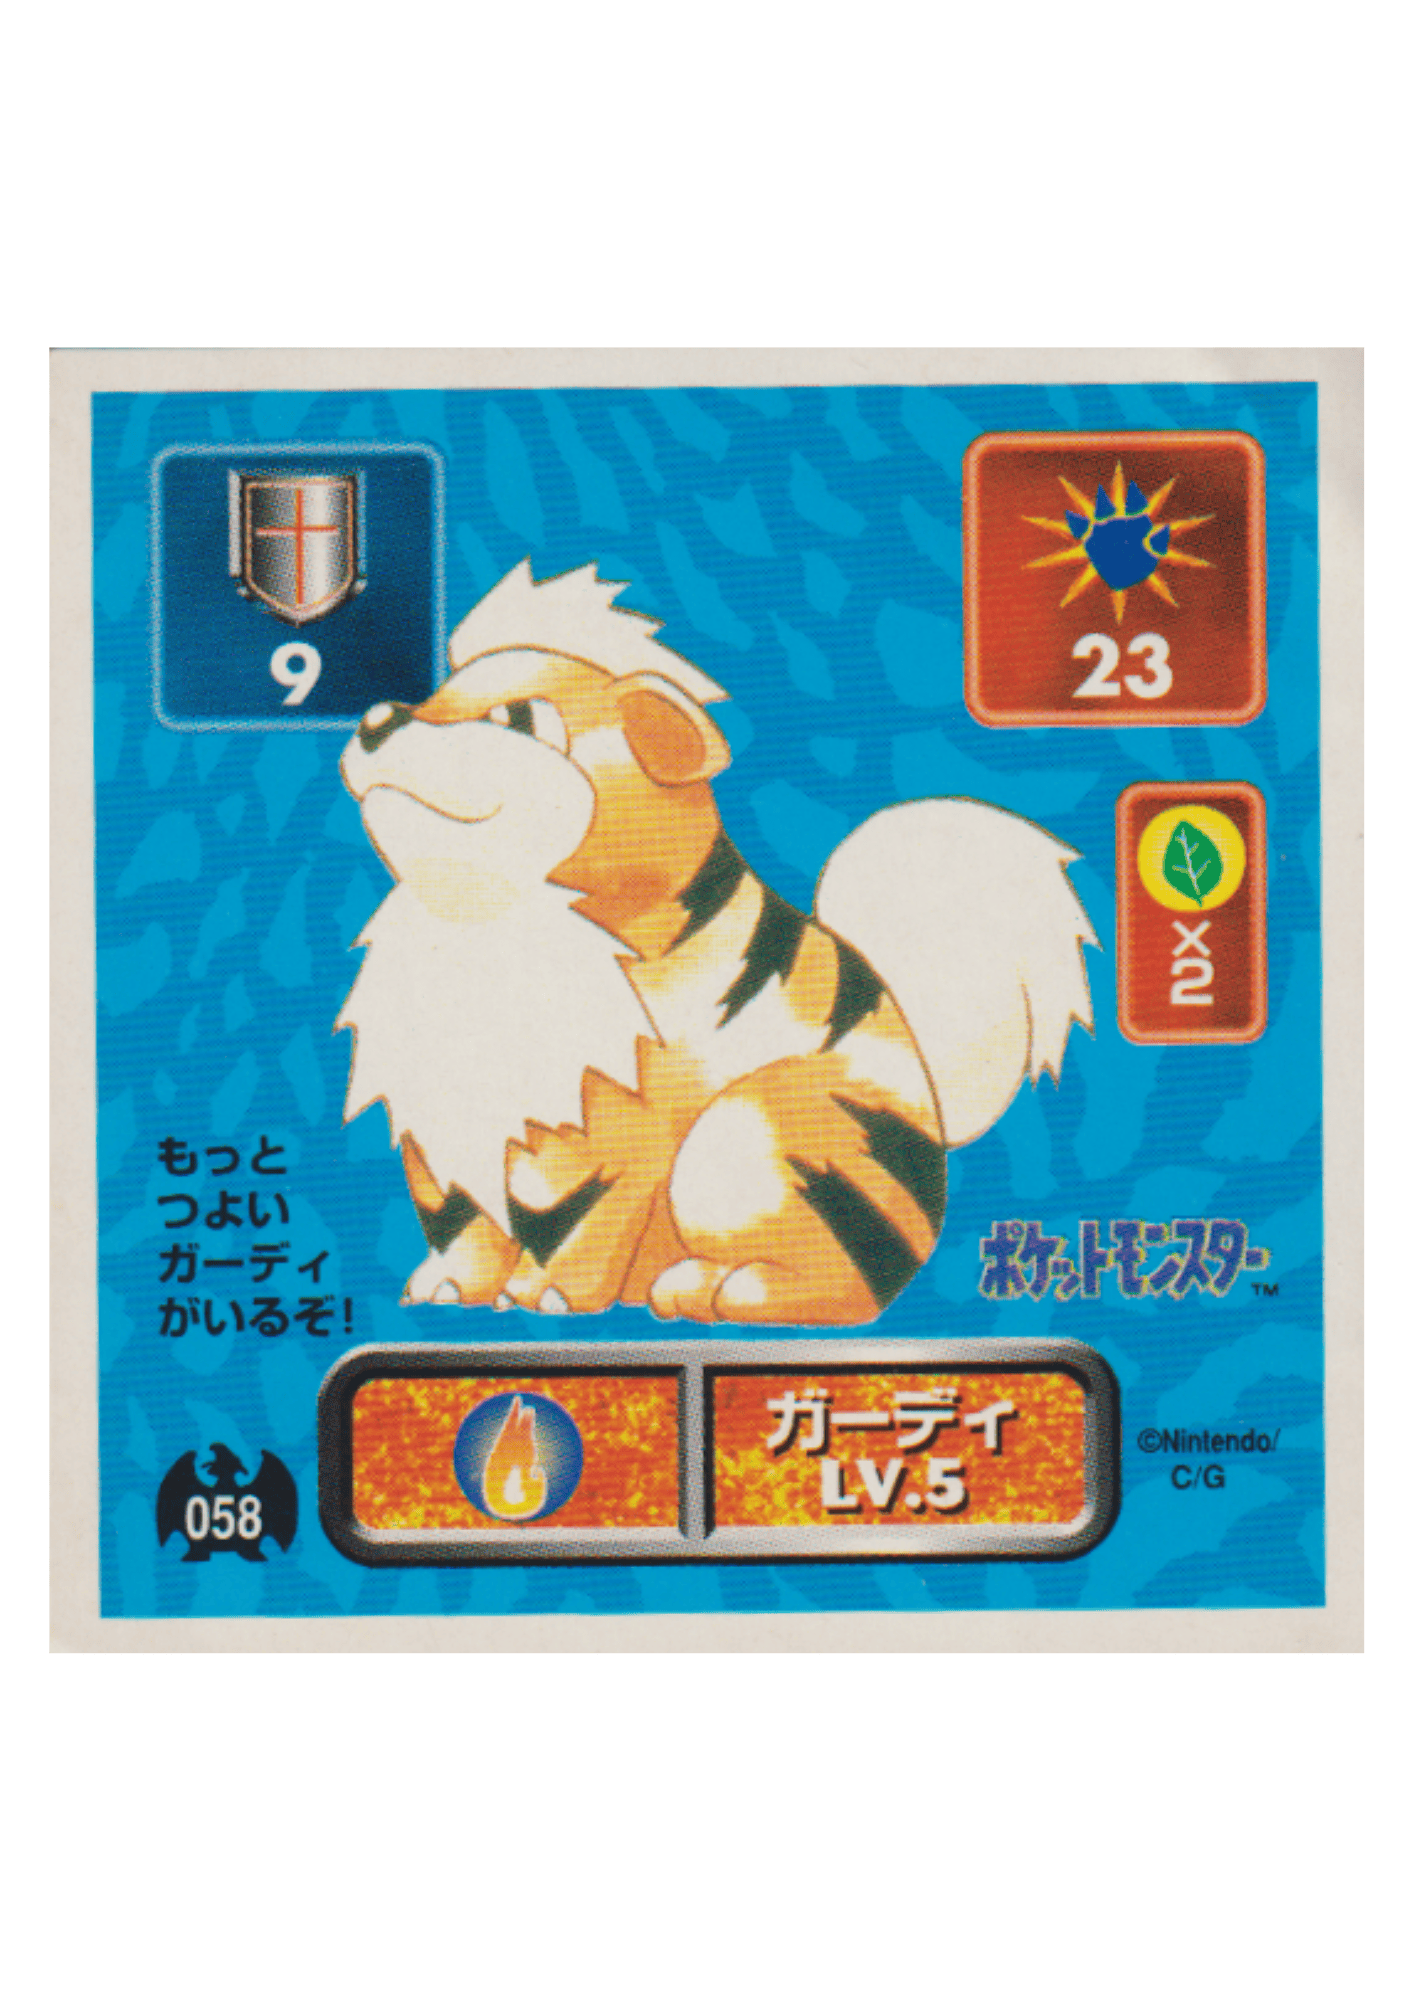 Sticker Pokémon Amada (1996) : 058 Growlithe